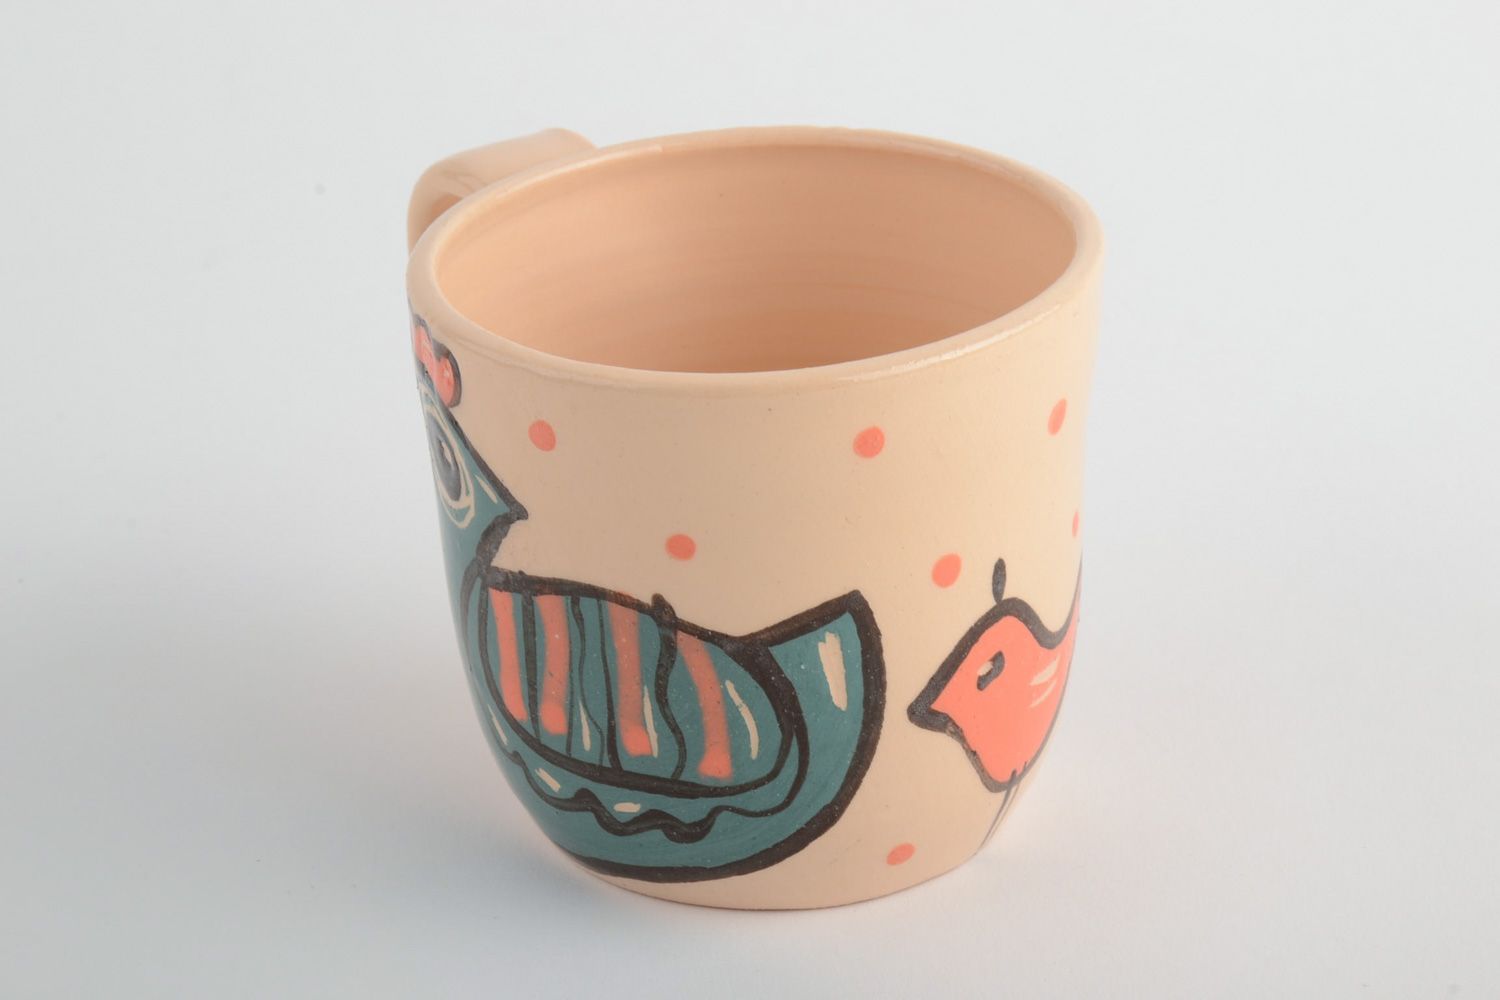 Глиняная чашка расписанная эмалью и покрытая глазурью с рисунком птички фото 3